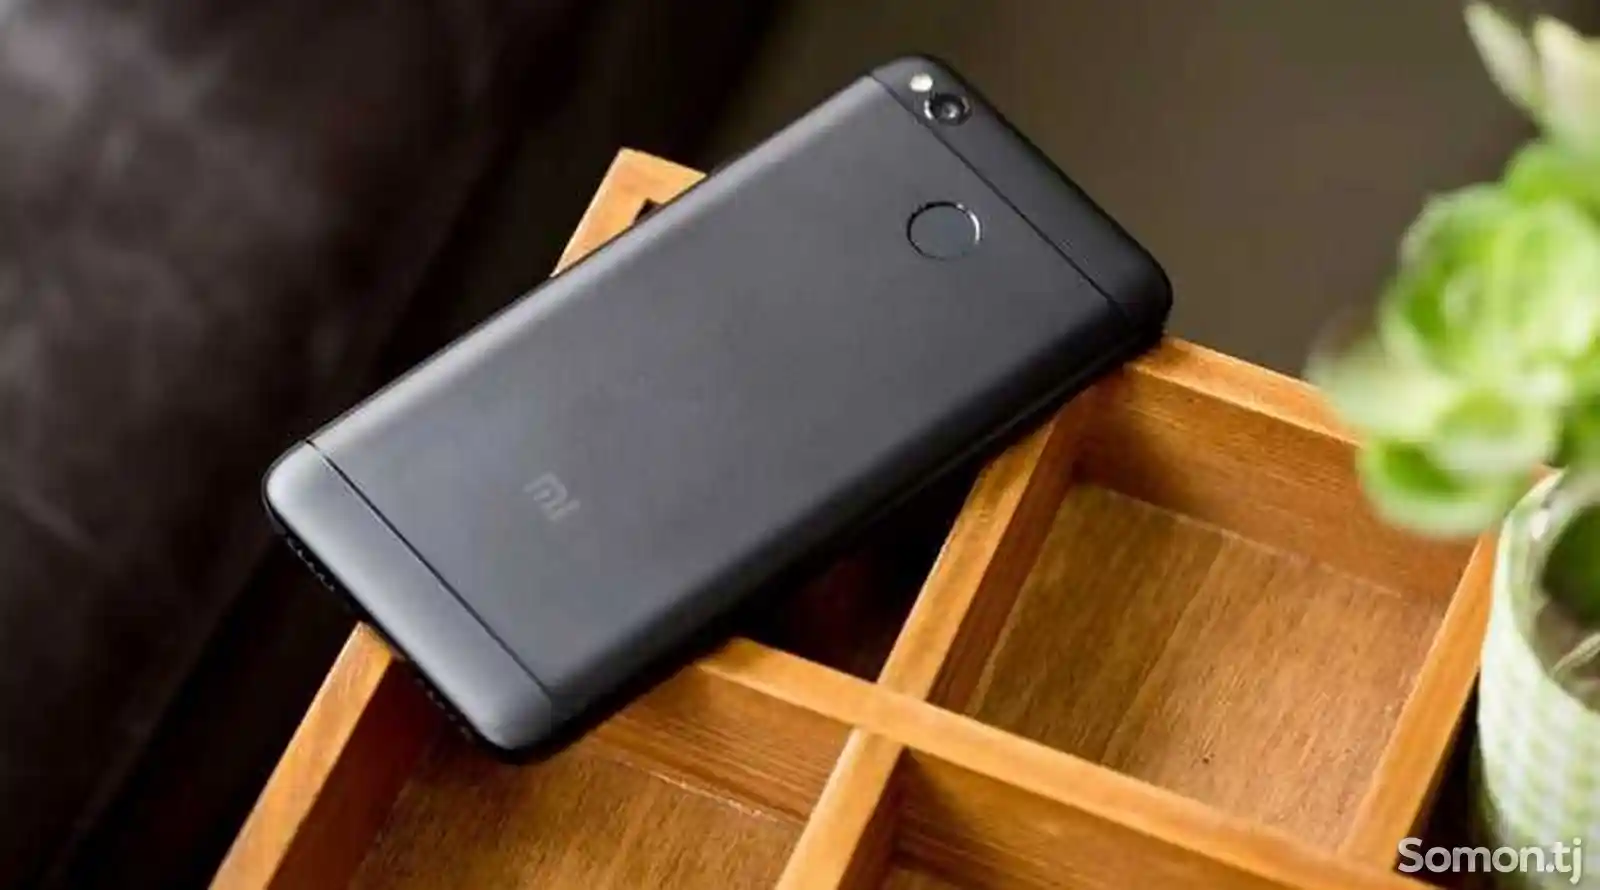 Xiaomi Redmi 4x-1